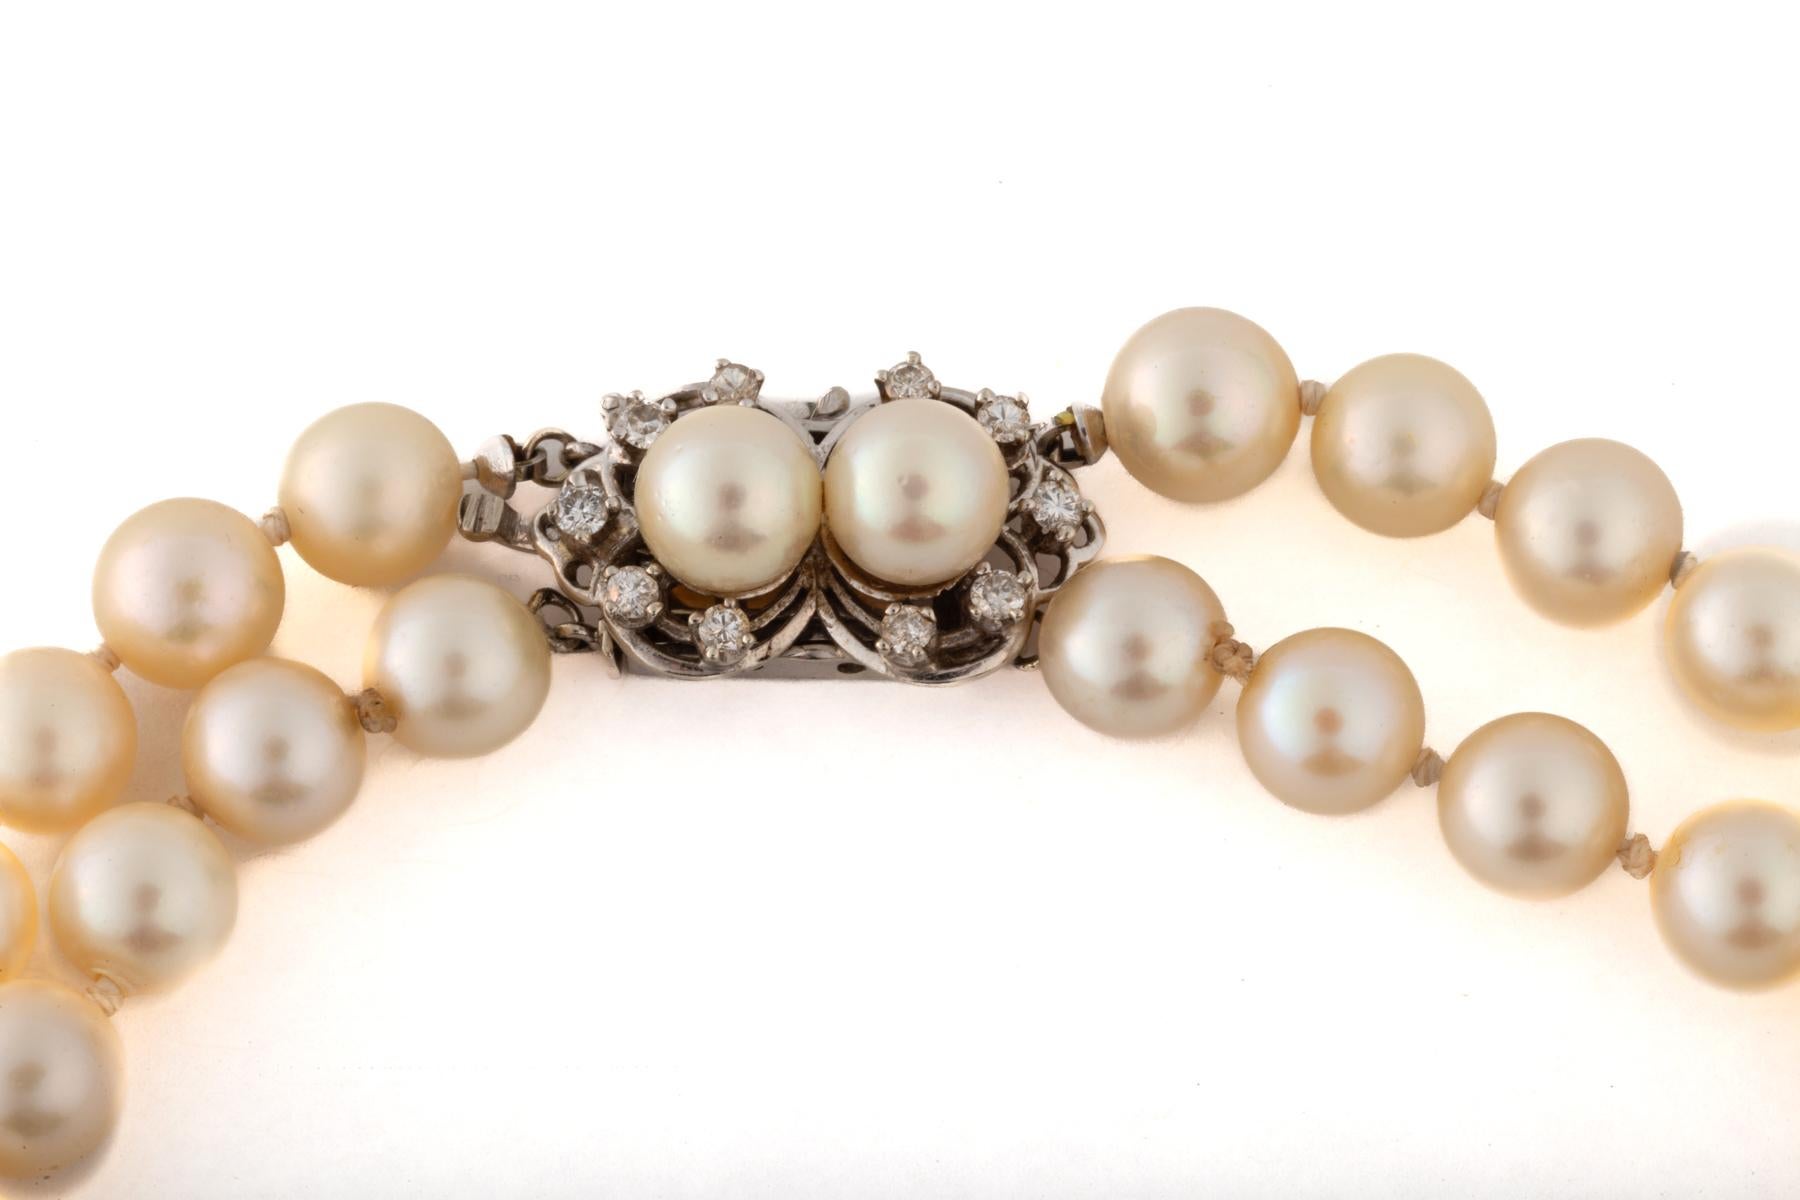 Ein doppelter Strang mit 7,143 mm großen Zuchtperlen wird mit einer schönen Perlen- und Diamantschließe geschlossen. Perlen werden heute ebenso klassisch getragen wie in der georgischen Zeit. Diese Stränge sind cremefarben mit einem Hauch von Rosa.